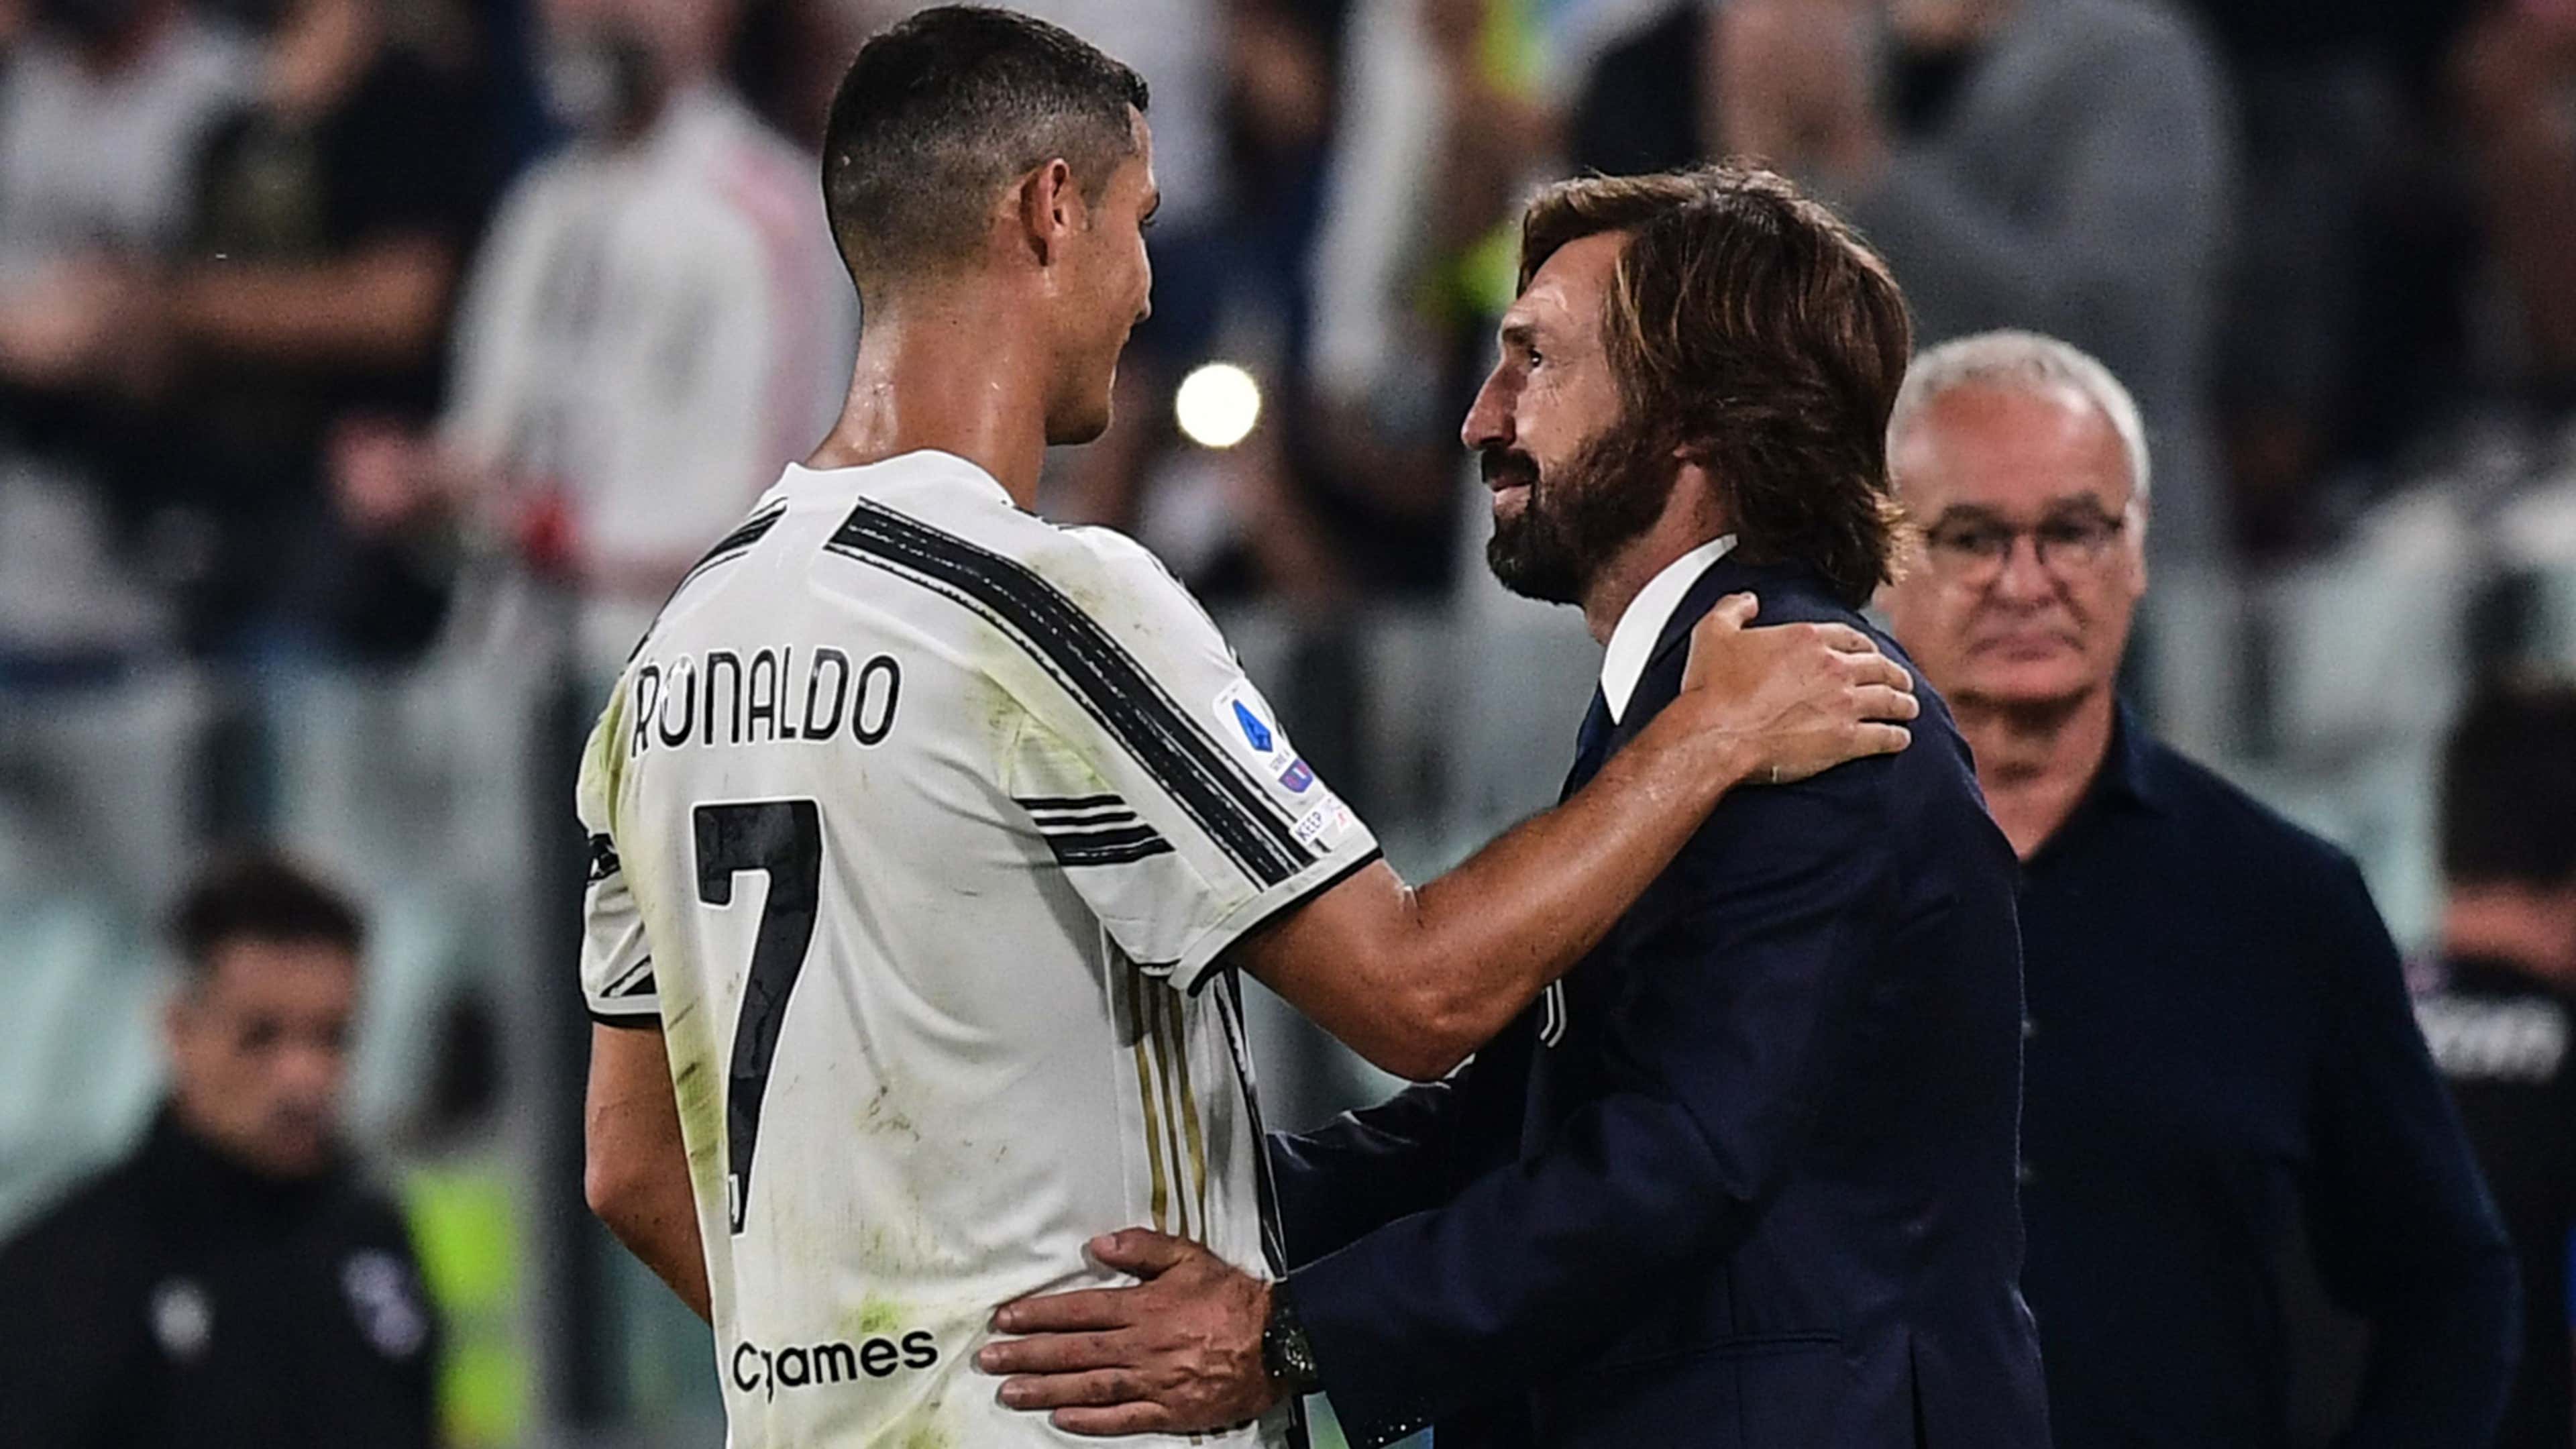 Cristiano Ronaldo Andrea Pirlo Juventus 2020-21